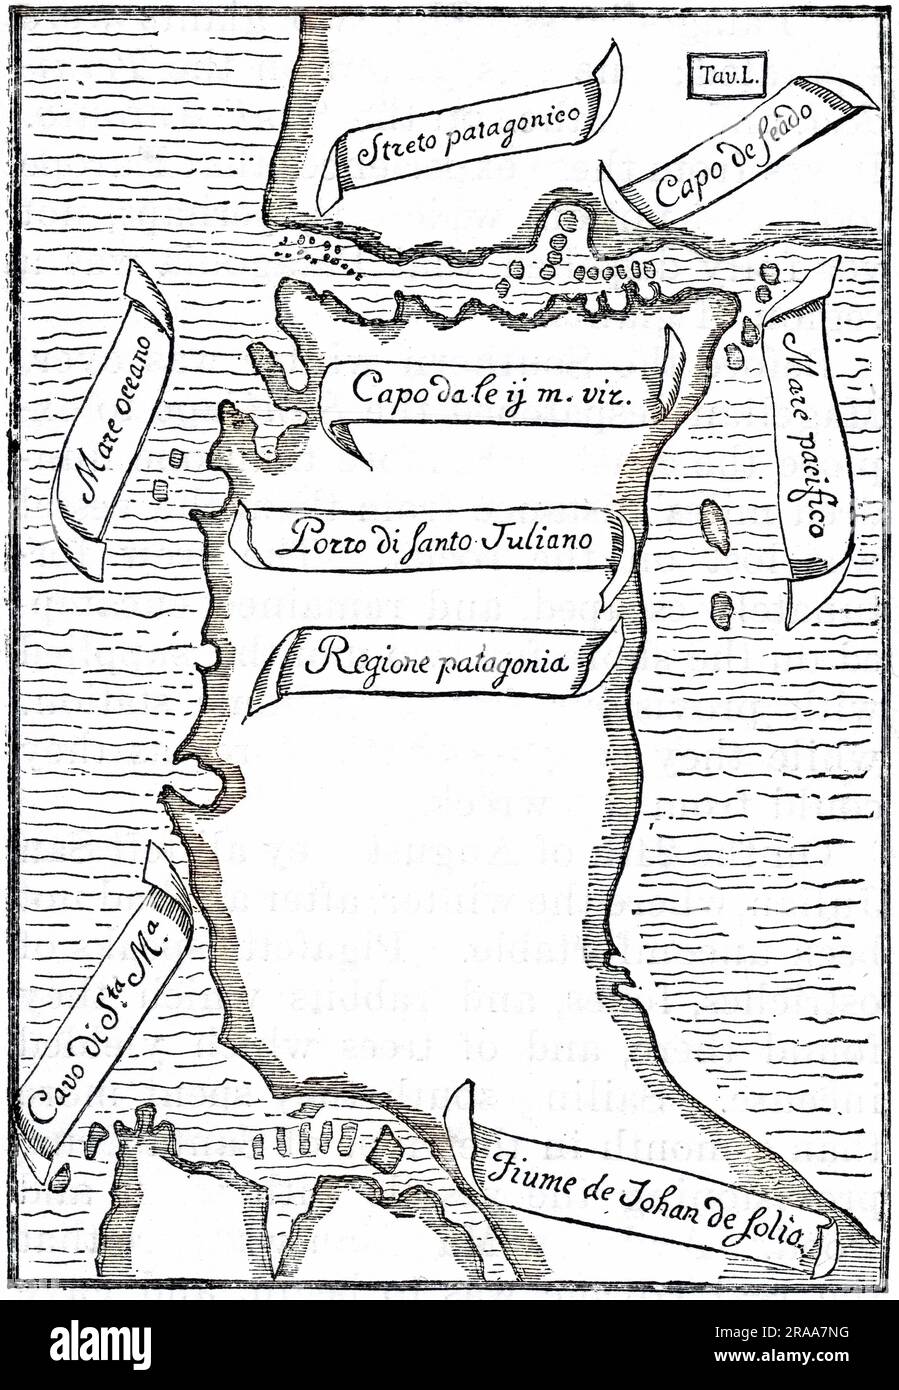 Karte der Meerenge, als sie von europäischen Navigatoren unter dem Kommando von Magellan entdeckt wurden. Datum: 1520 Stockfoto